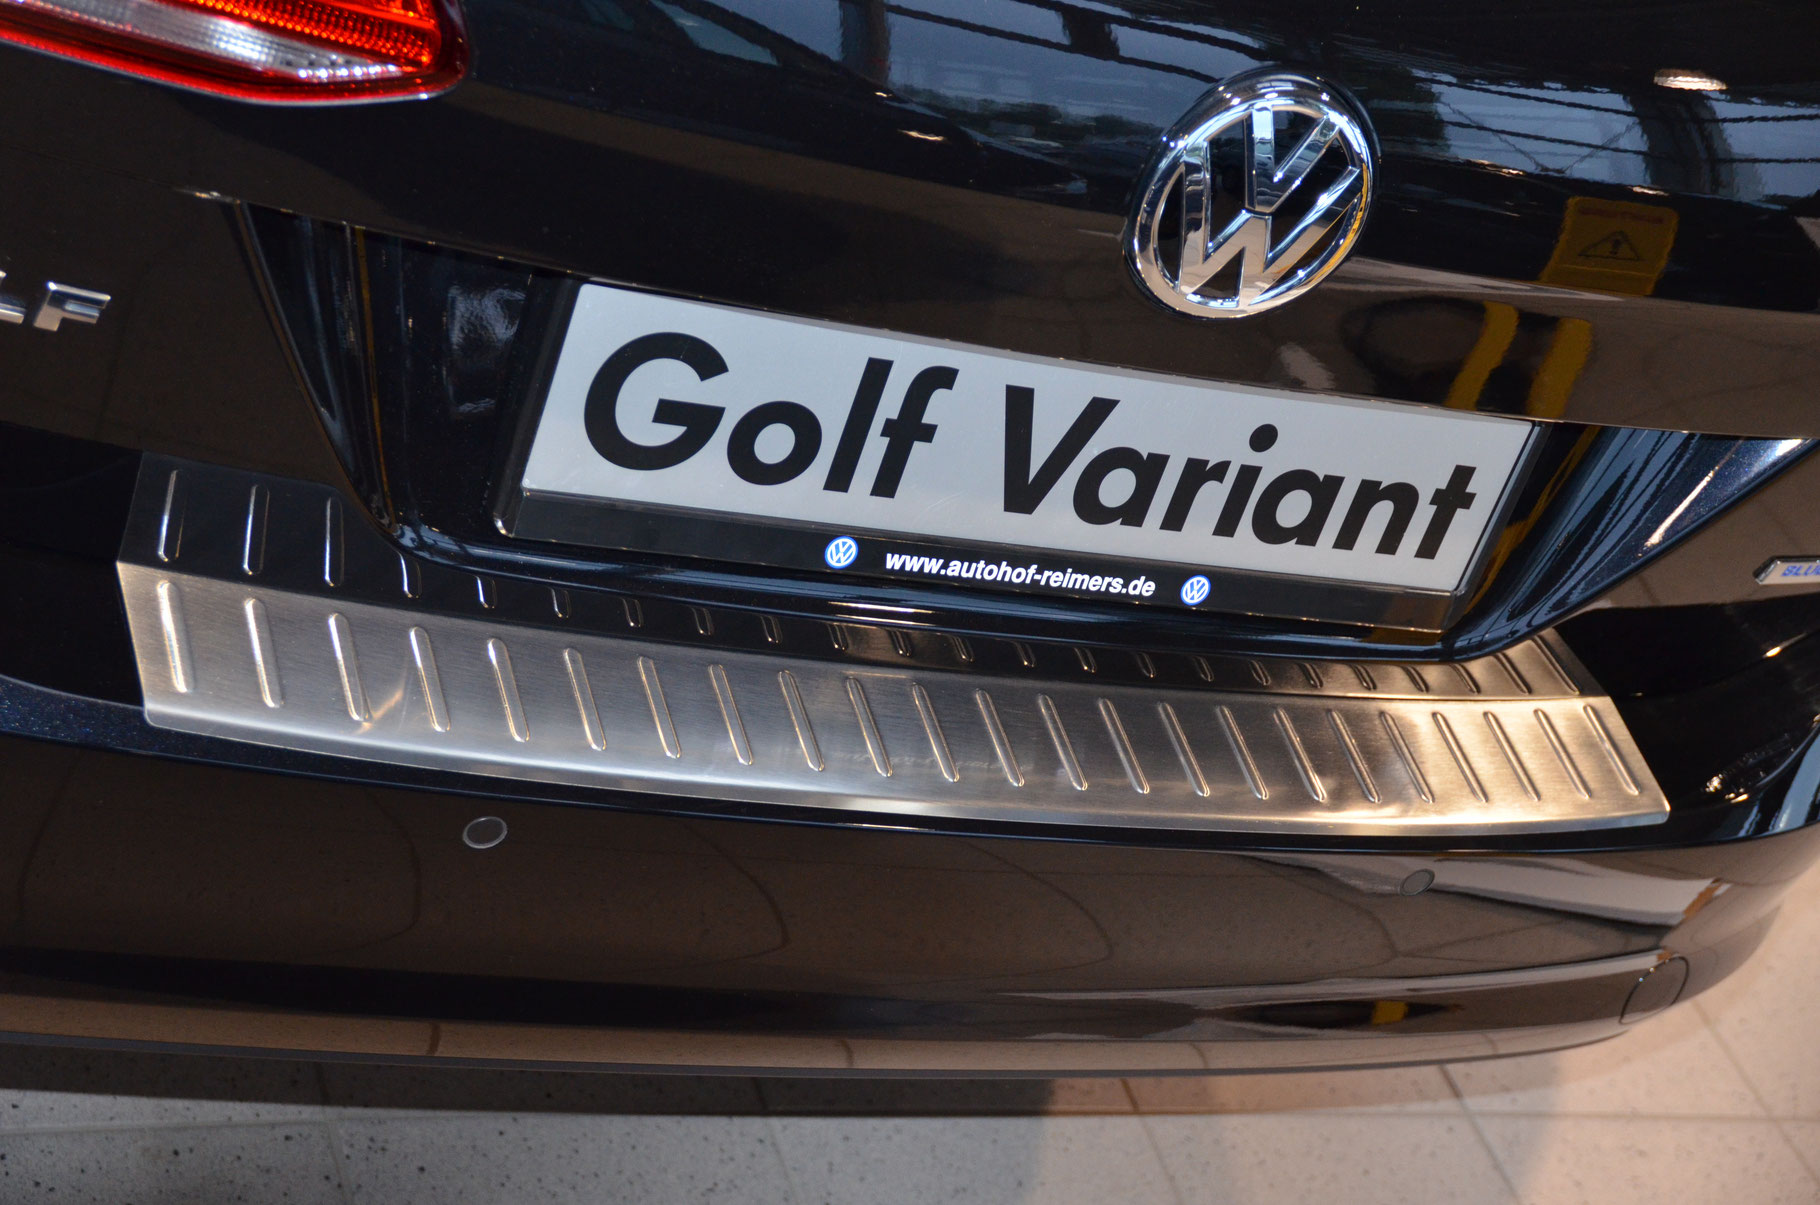 Ladekantenschutz für VW Golf 7 - Schutz für die Ladekante Ihres Fahrzeuges